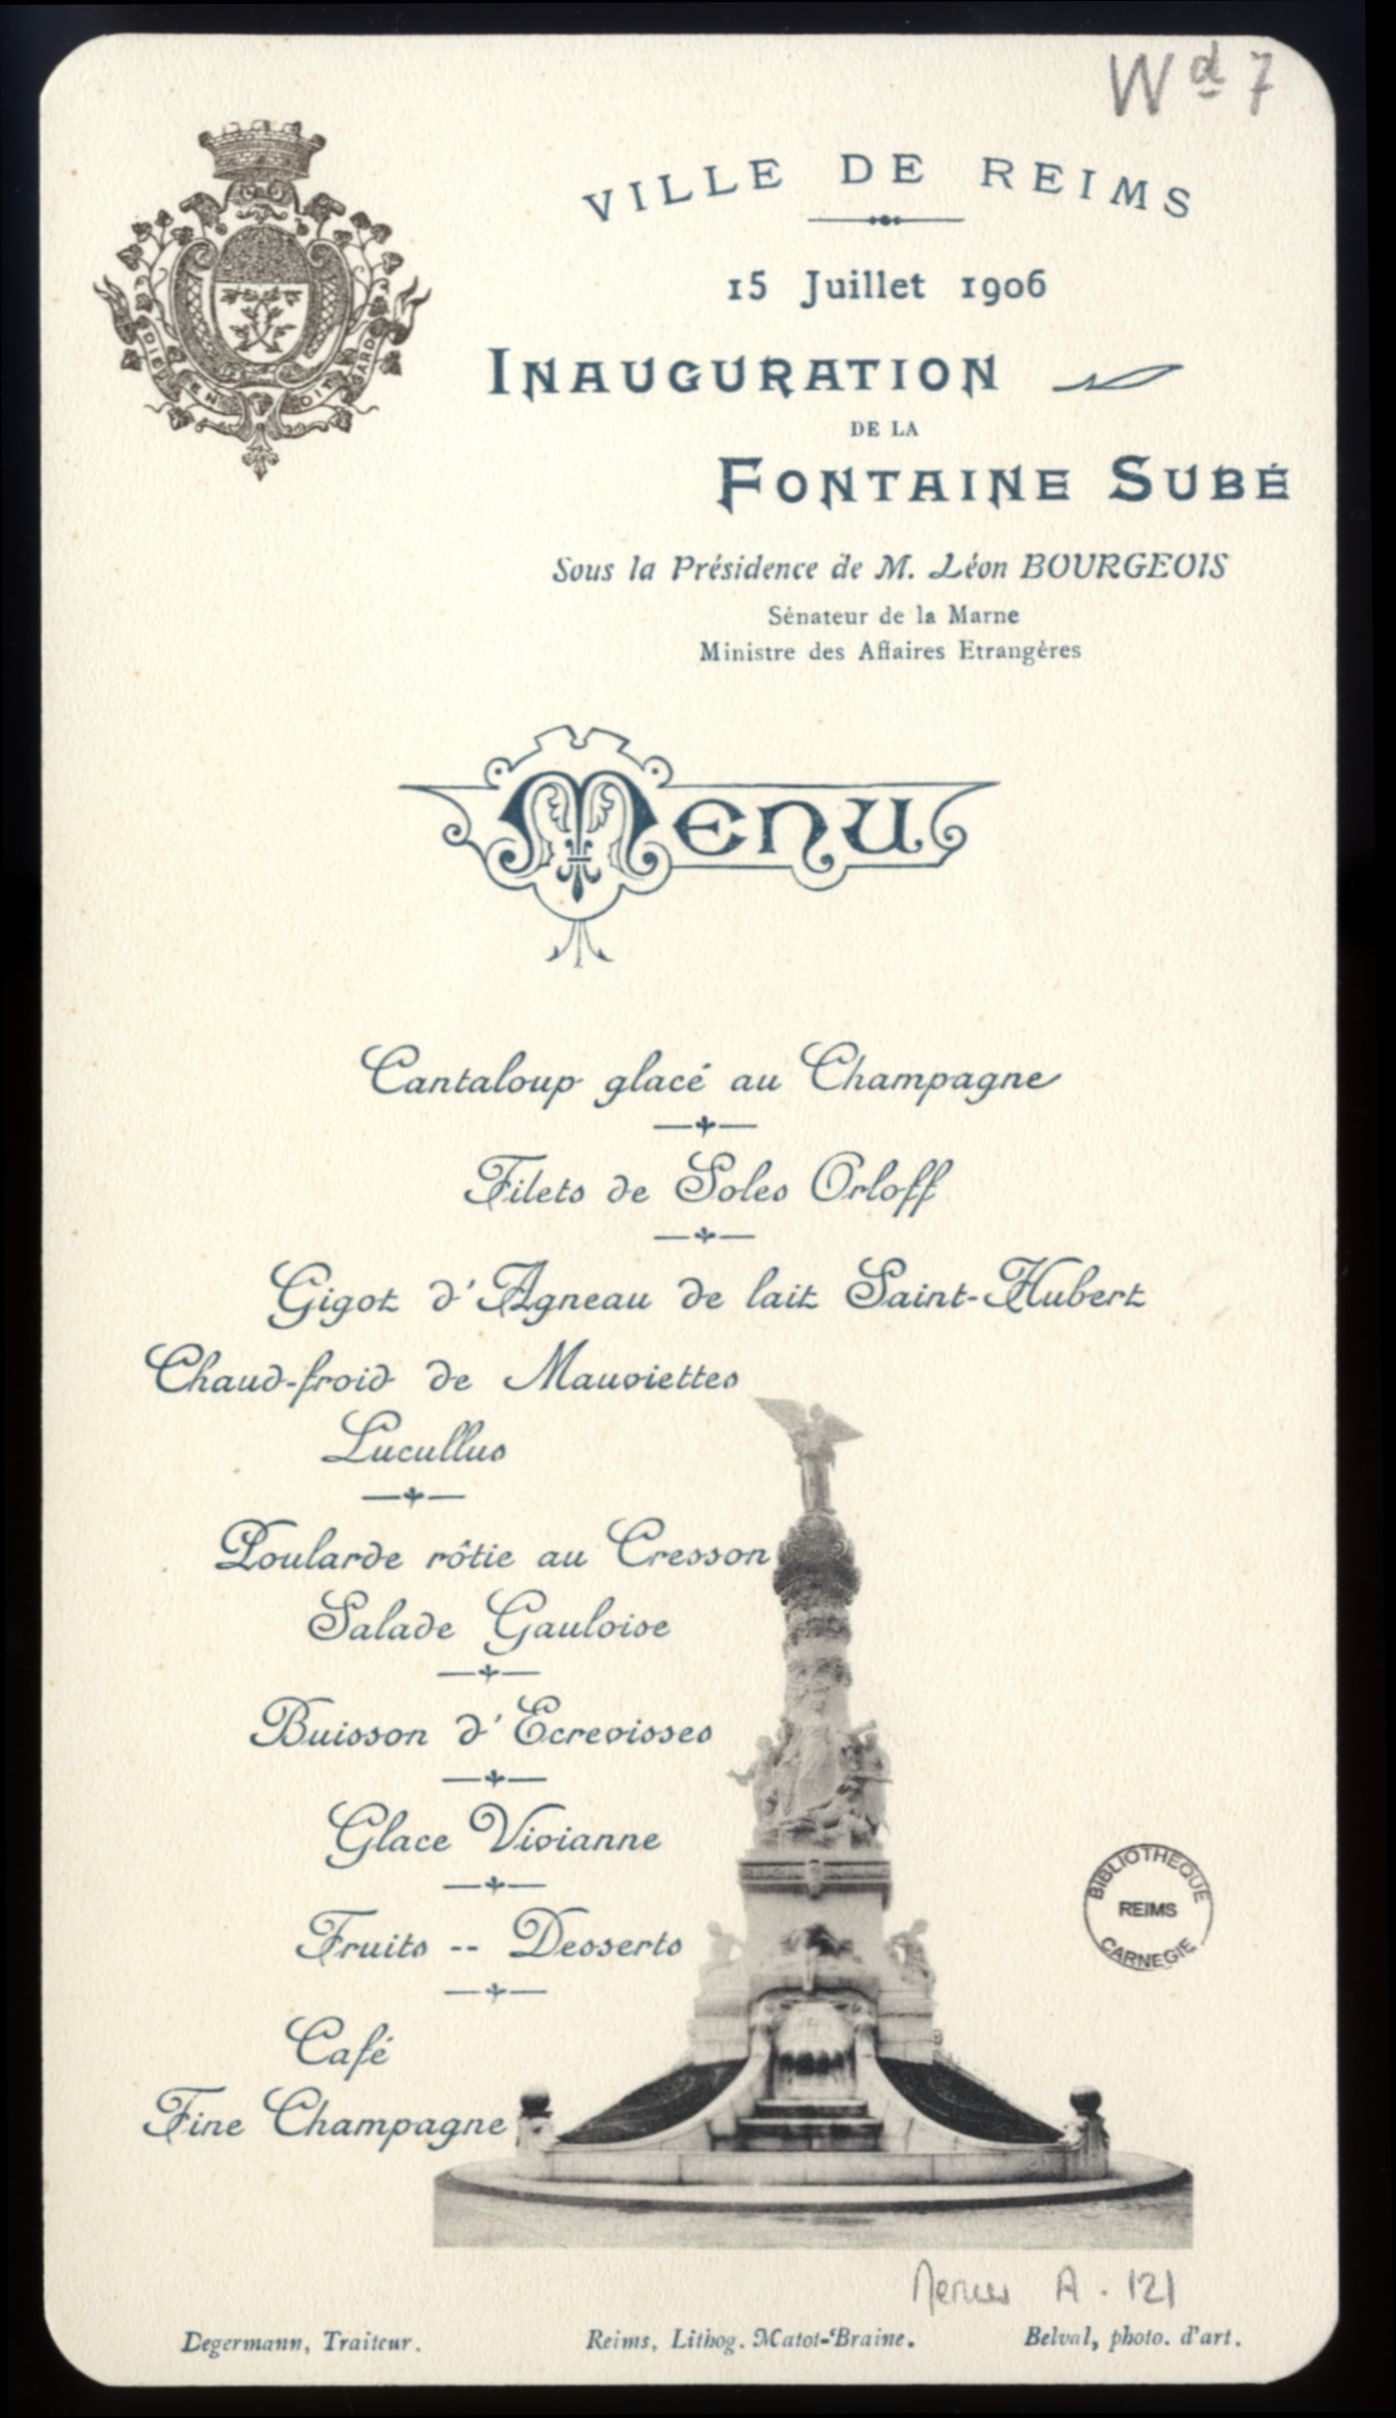 Banquet organisé lors de l'inauguration de la Fontaine Subé, sous la Présidence de M. Léon Bourgeois, Sénateur de la Marne, Ministre des Affaires Etrangères, le 15 juillet 1906 / Ville de Reims. Menus-A-121